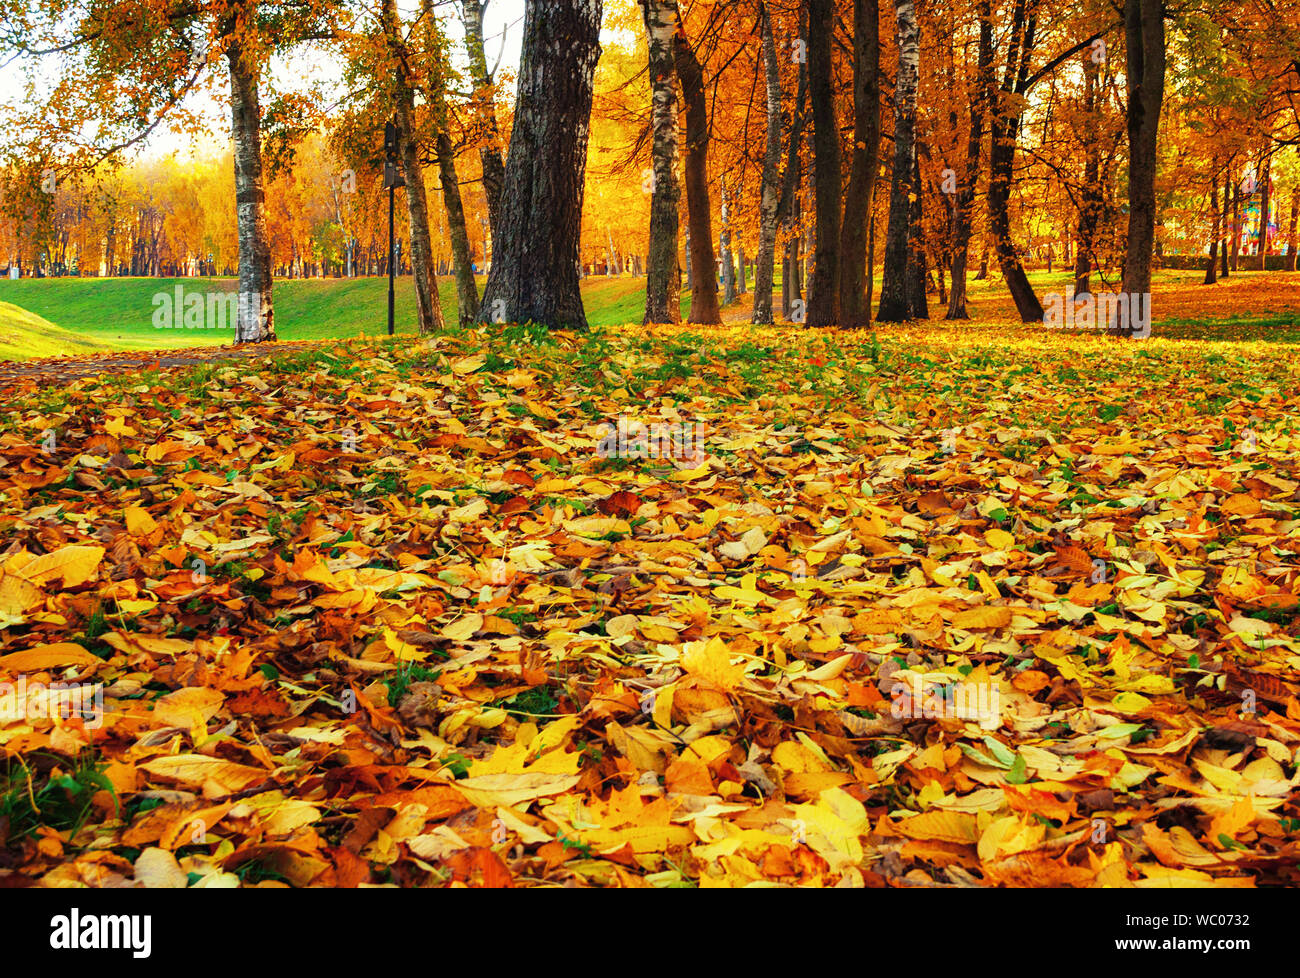 Vue paysage automne automne de Park au coucher du soleil. Rangée d'arbres d'automne avec des feuilles sèches couvrant le sol, l'accent mis sur l'automne les feuilles sur l'avant-plan Banque D'Images